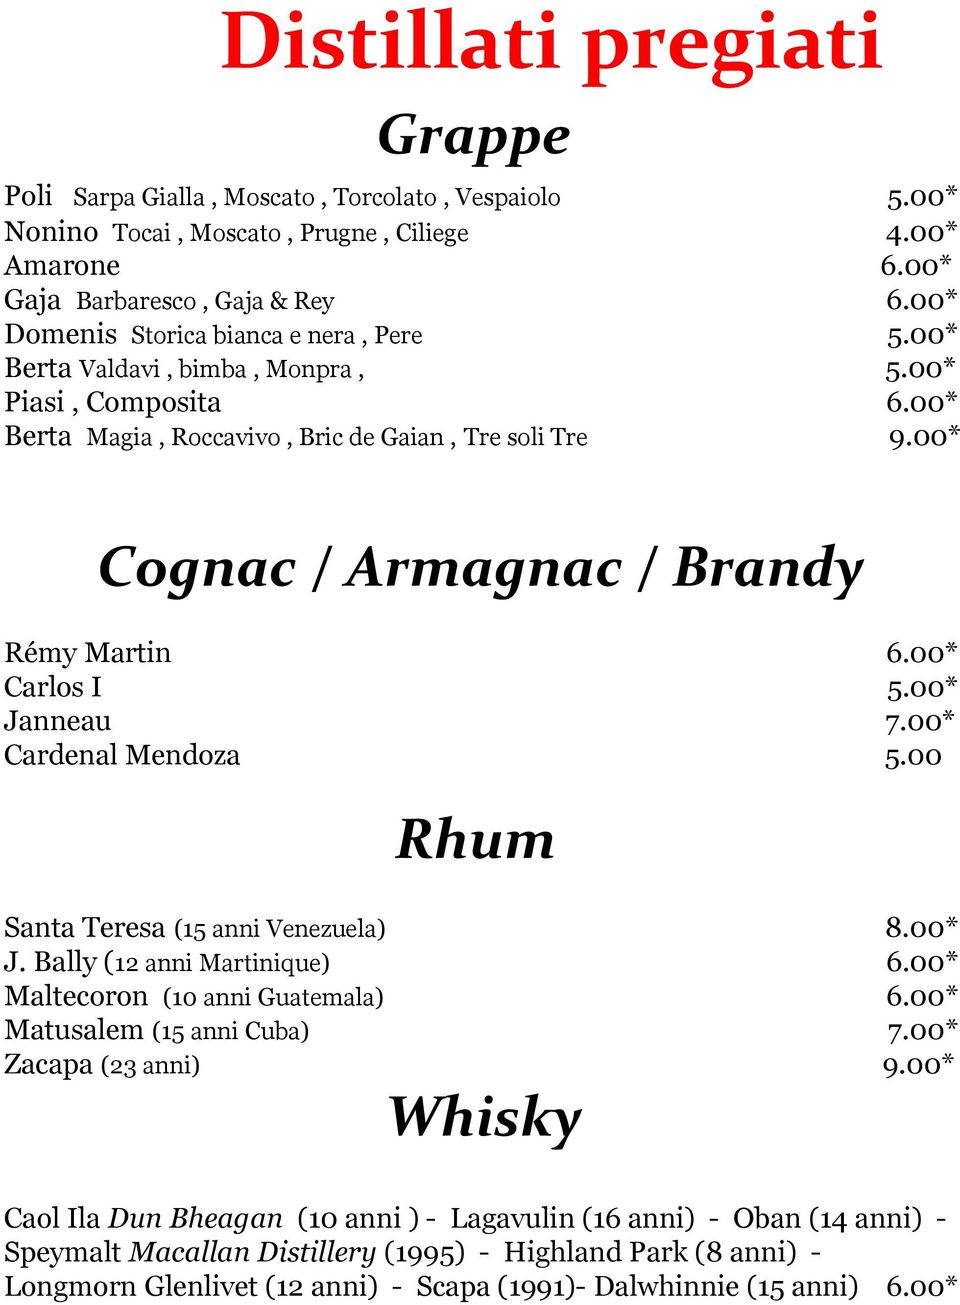 00* Cognac / Armagnac / Brandy Rémy Martin 6.00* Carlos I 5.00* Janneau 7.00* Cardenal Mendoza 5.00 Rhum Santa Teresa (15 anni Venezuela) 8.00* J. Bally (12 anni Martinique) 6.